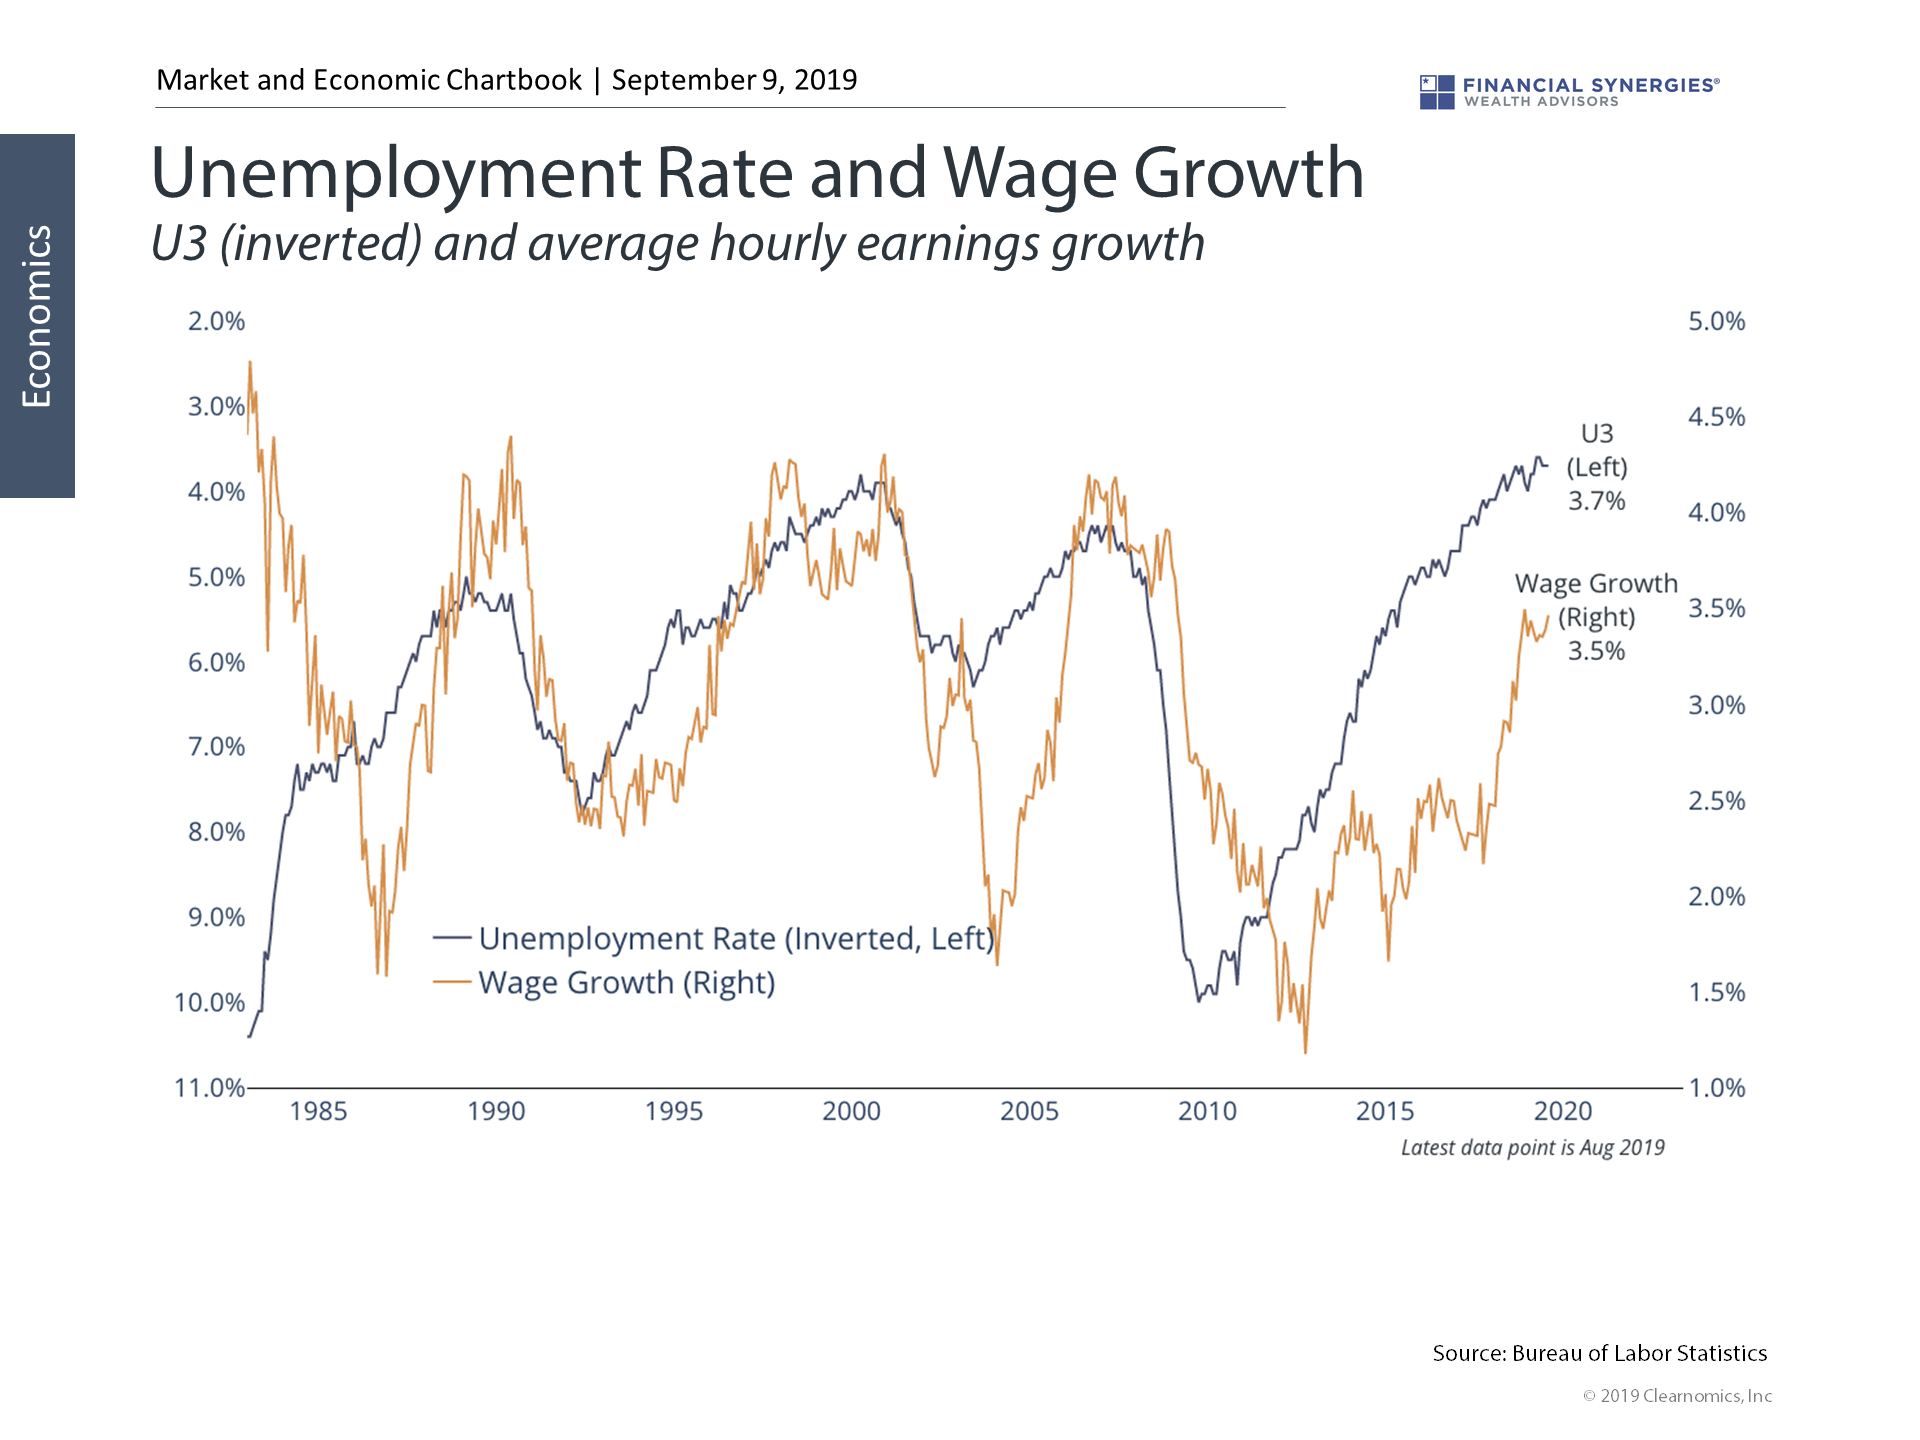 wage growth